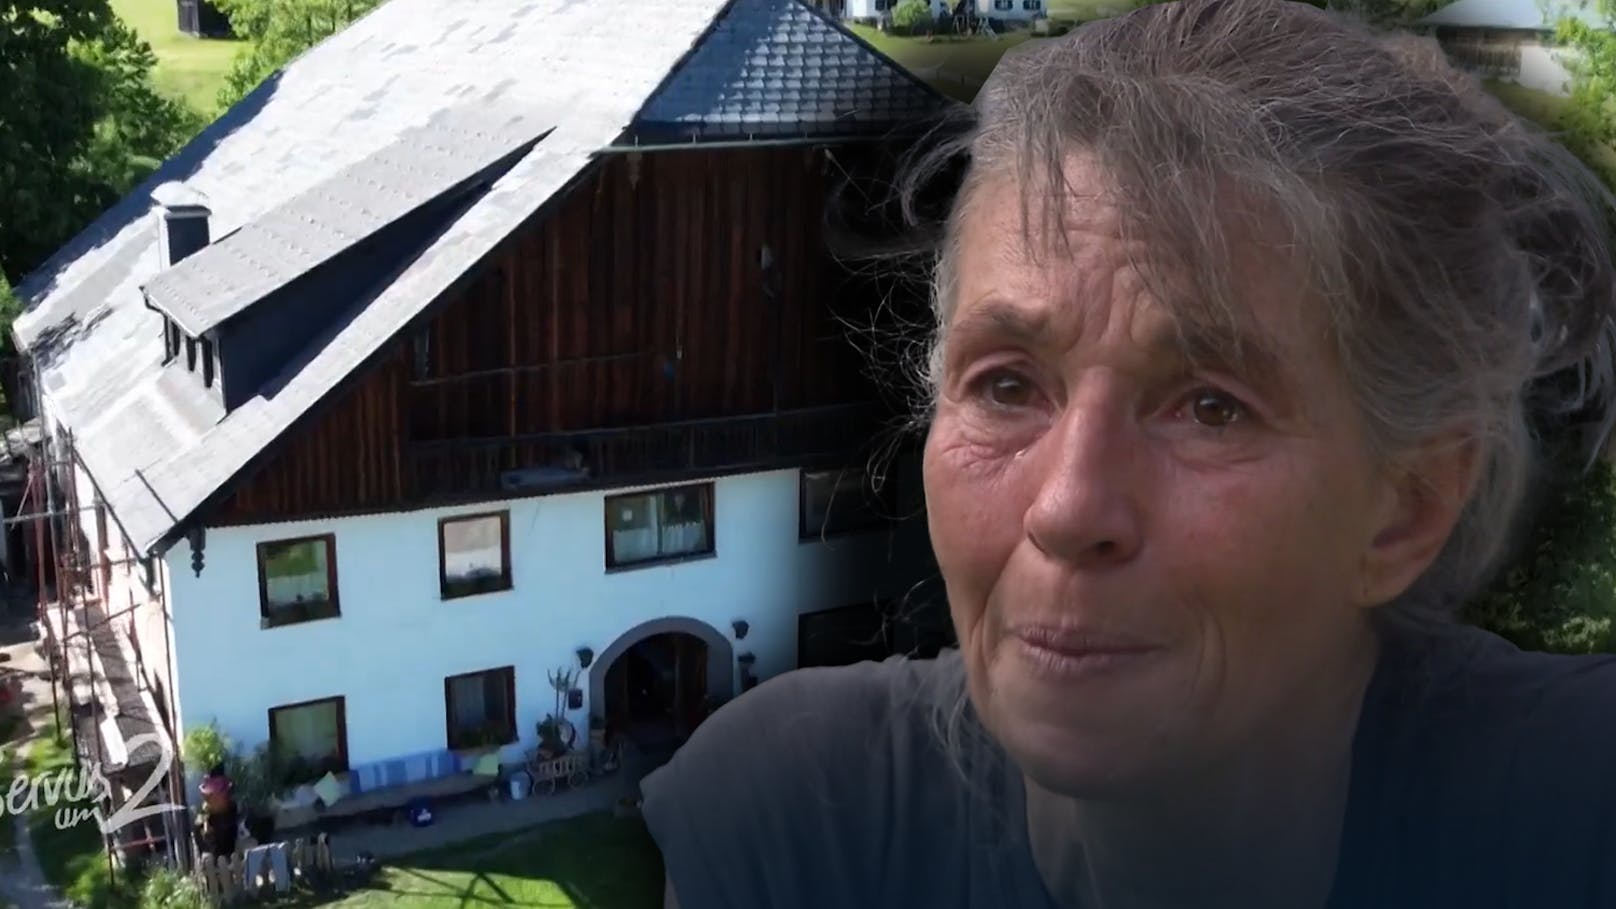 Die Landwirtin aus St. Wolfgang schuftete ihr Leben lang, stand kurz vor dem Nichts. Servus TV interviewte Sabine.